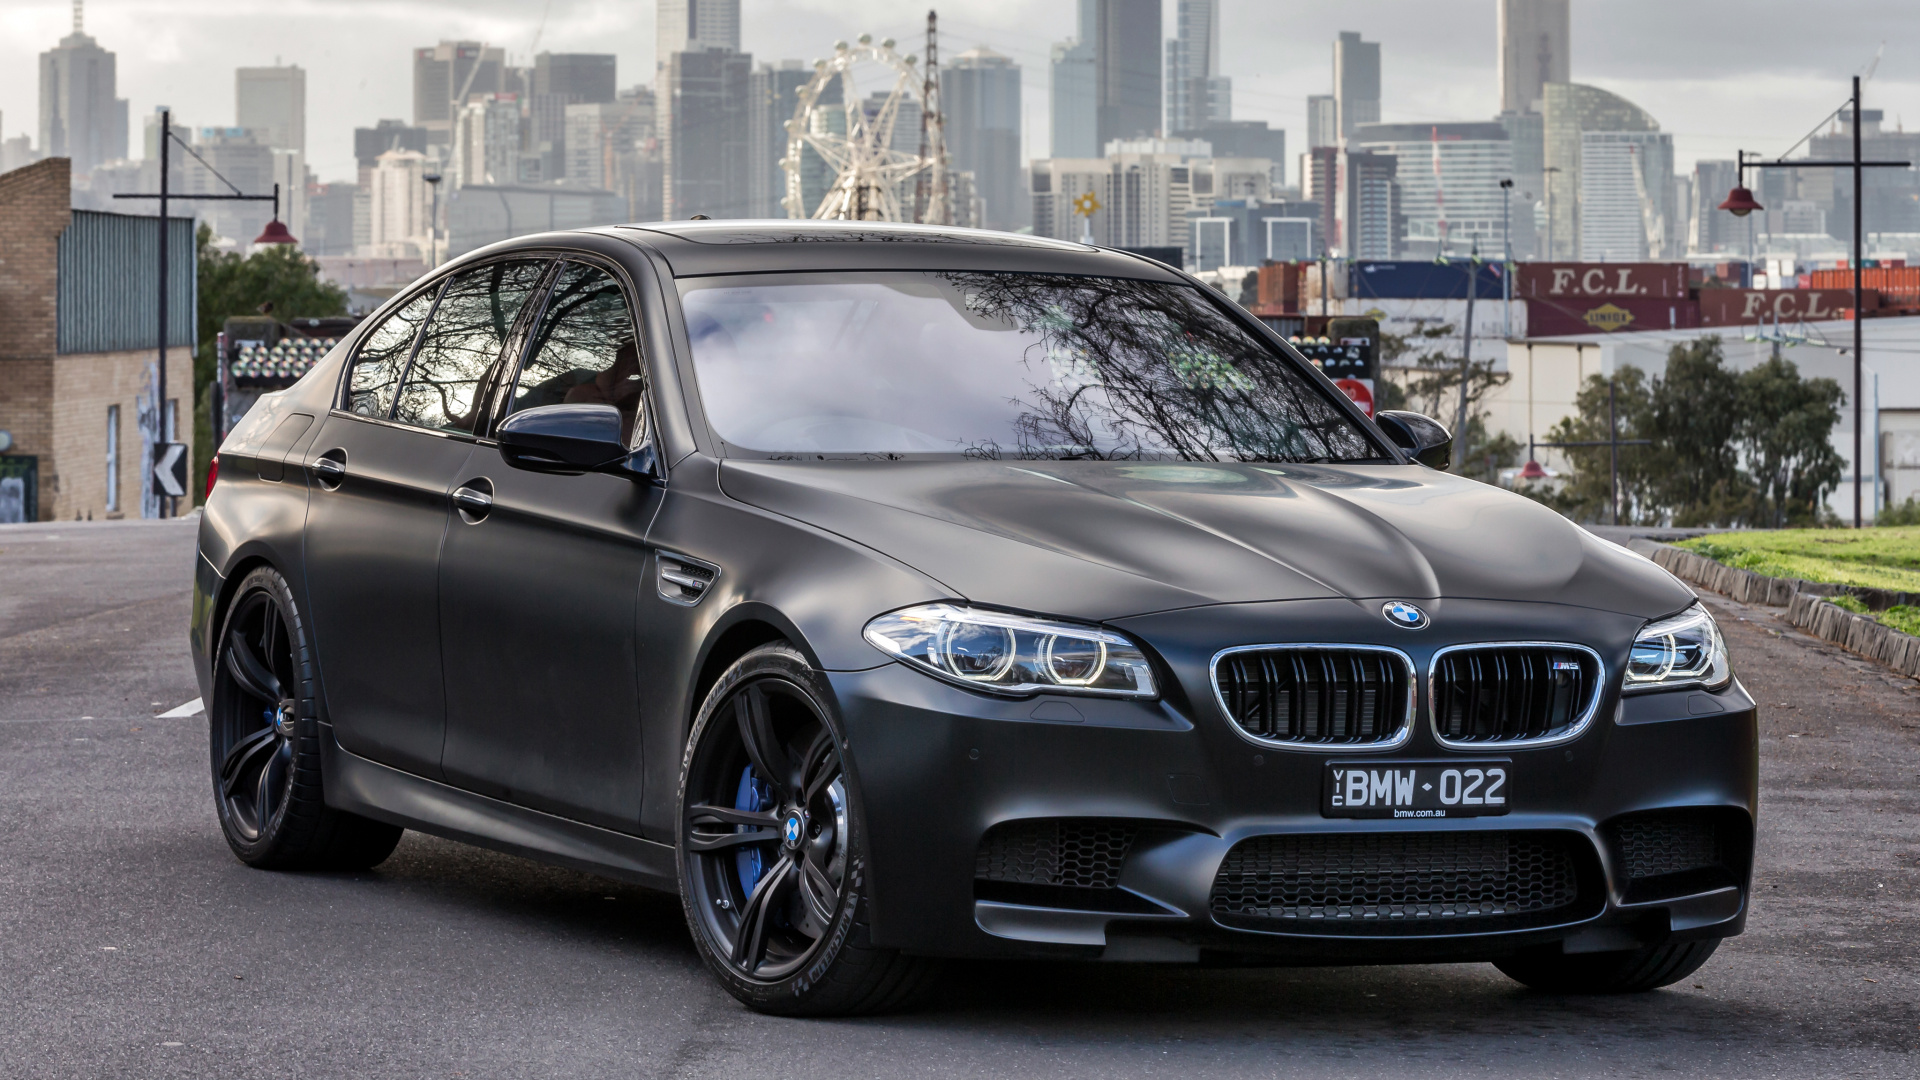 2018年BMW M5, 宝马, 宝马5系, 执行汽车, 铝合金轮毂 壁纸 1920x1080 允许